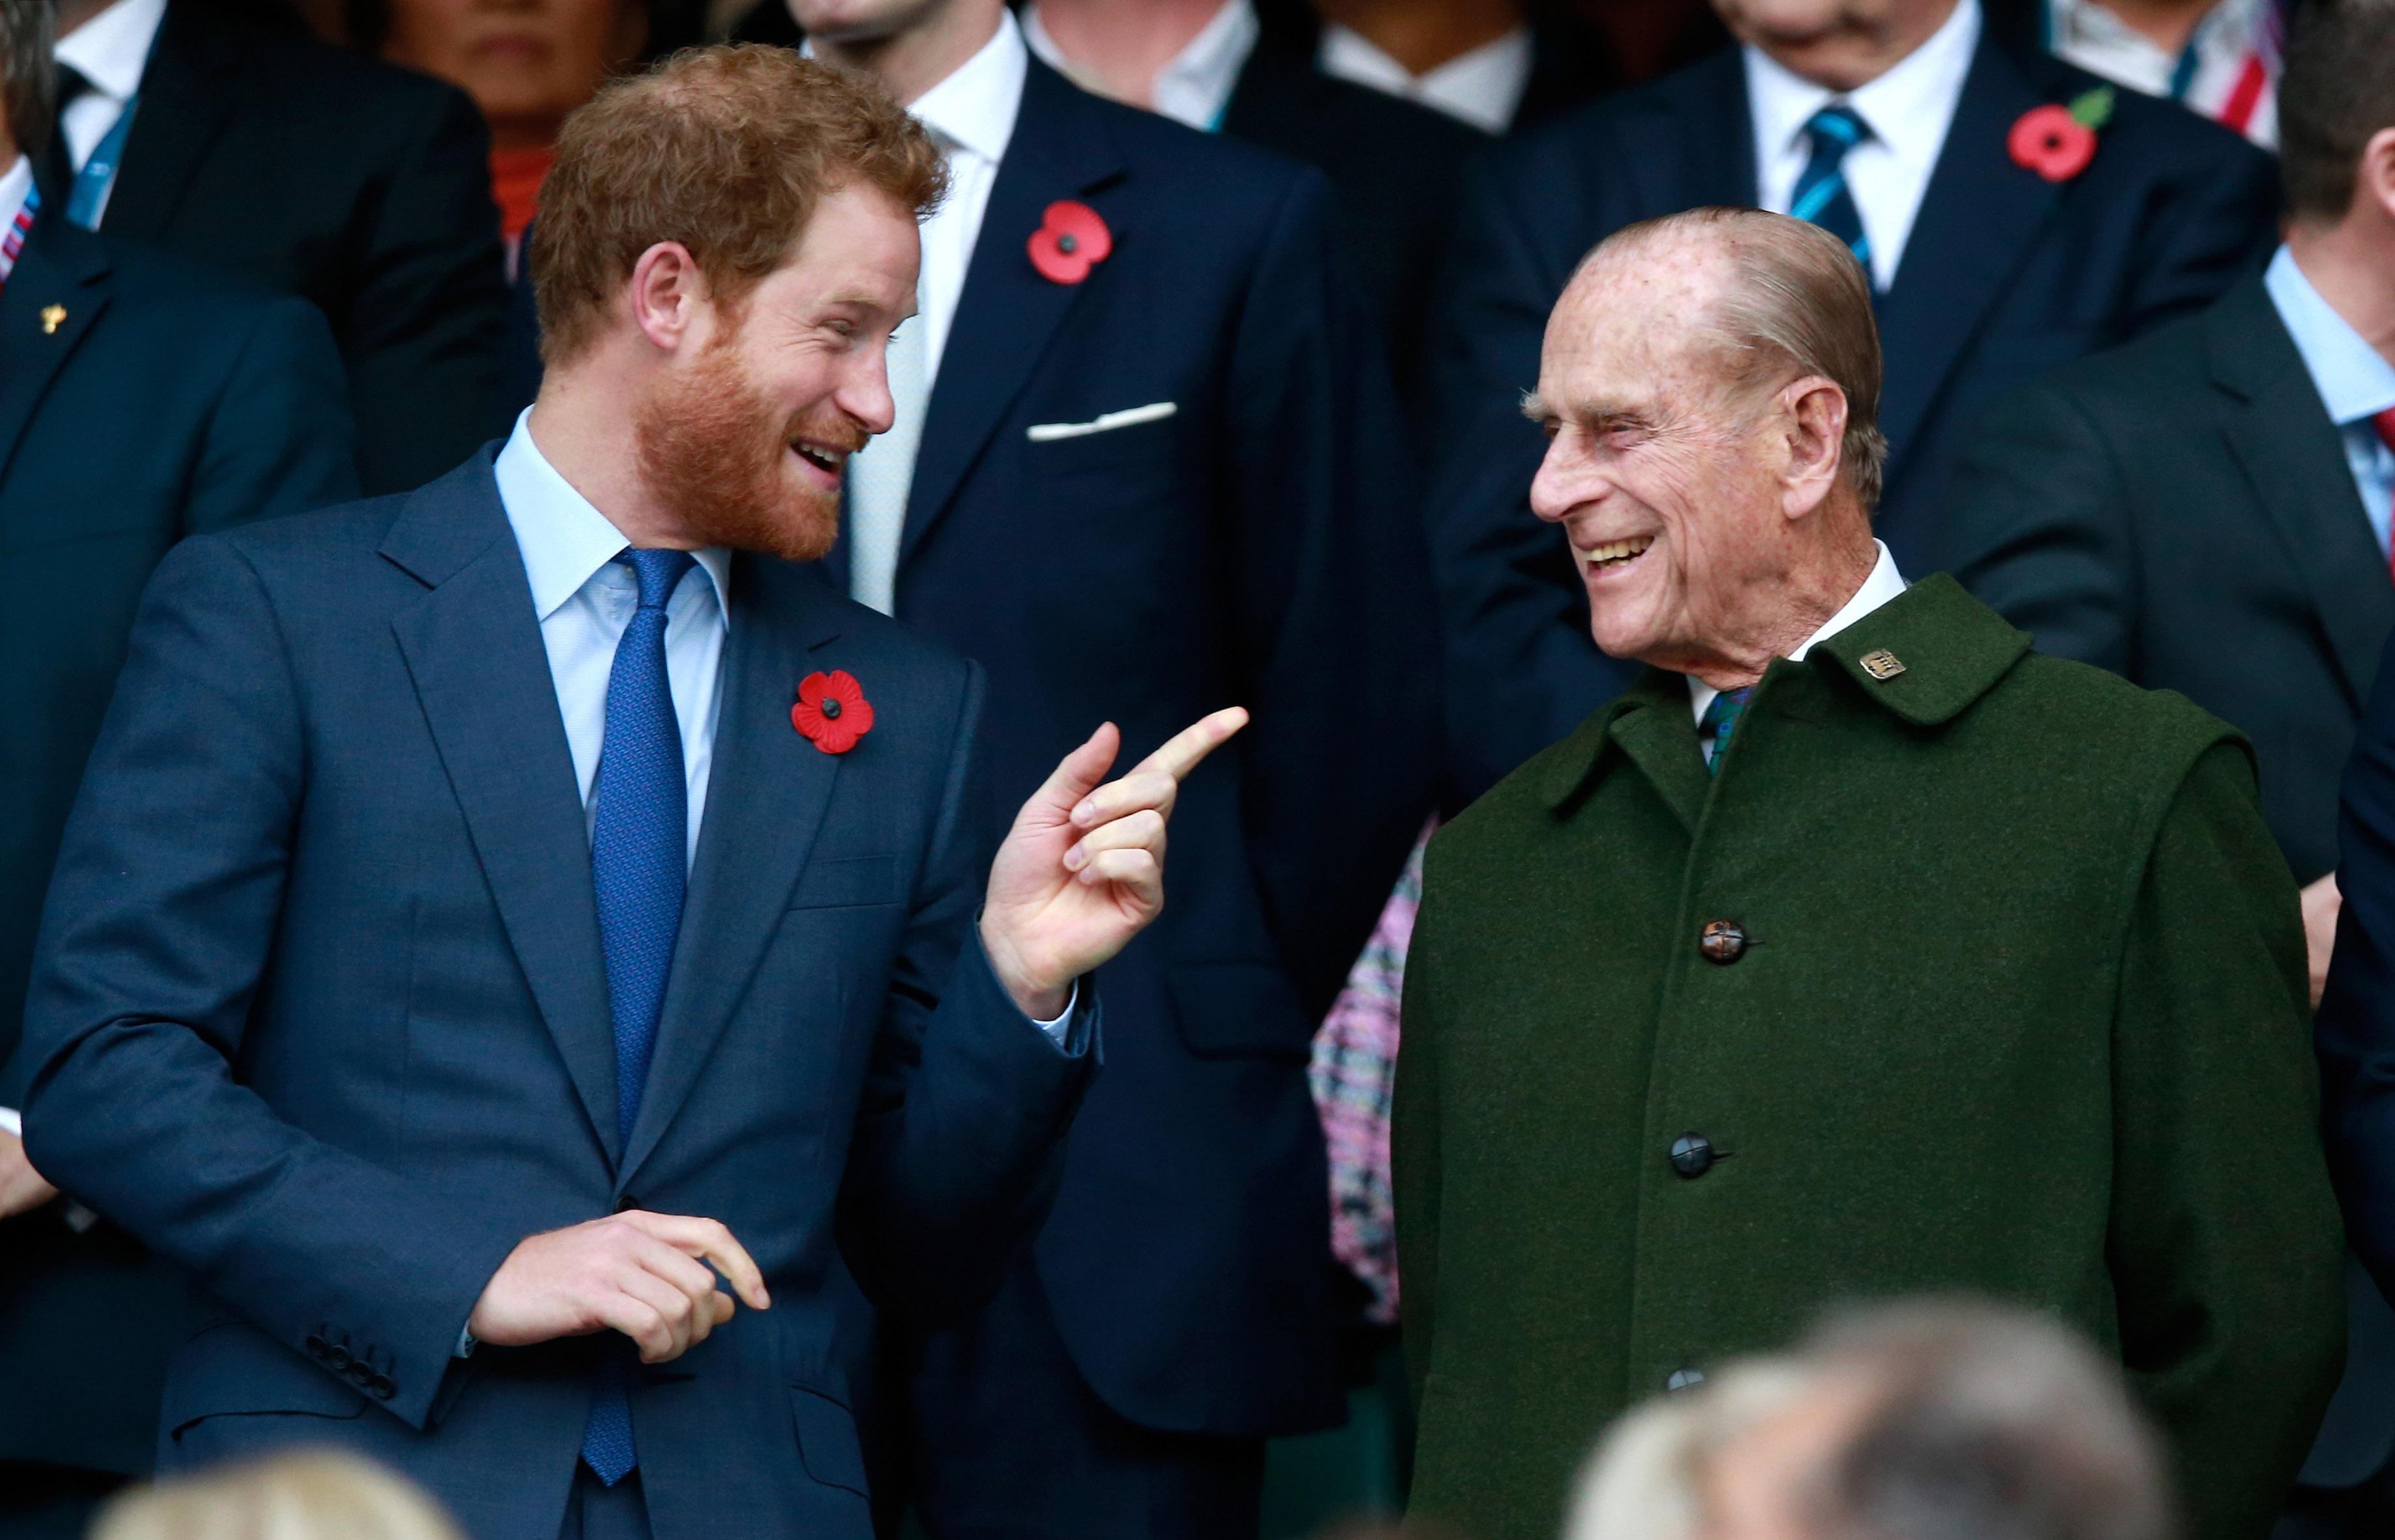 Prinţul Harry şi Prinţul Philip participă la finala Cupei Mondiale de rugby din 2015, dintre Noua Zeelandă şi Australia, pe stadionul Twickenham din Londra, pe 31 octombrie 2015